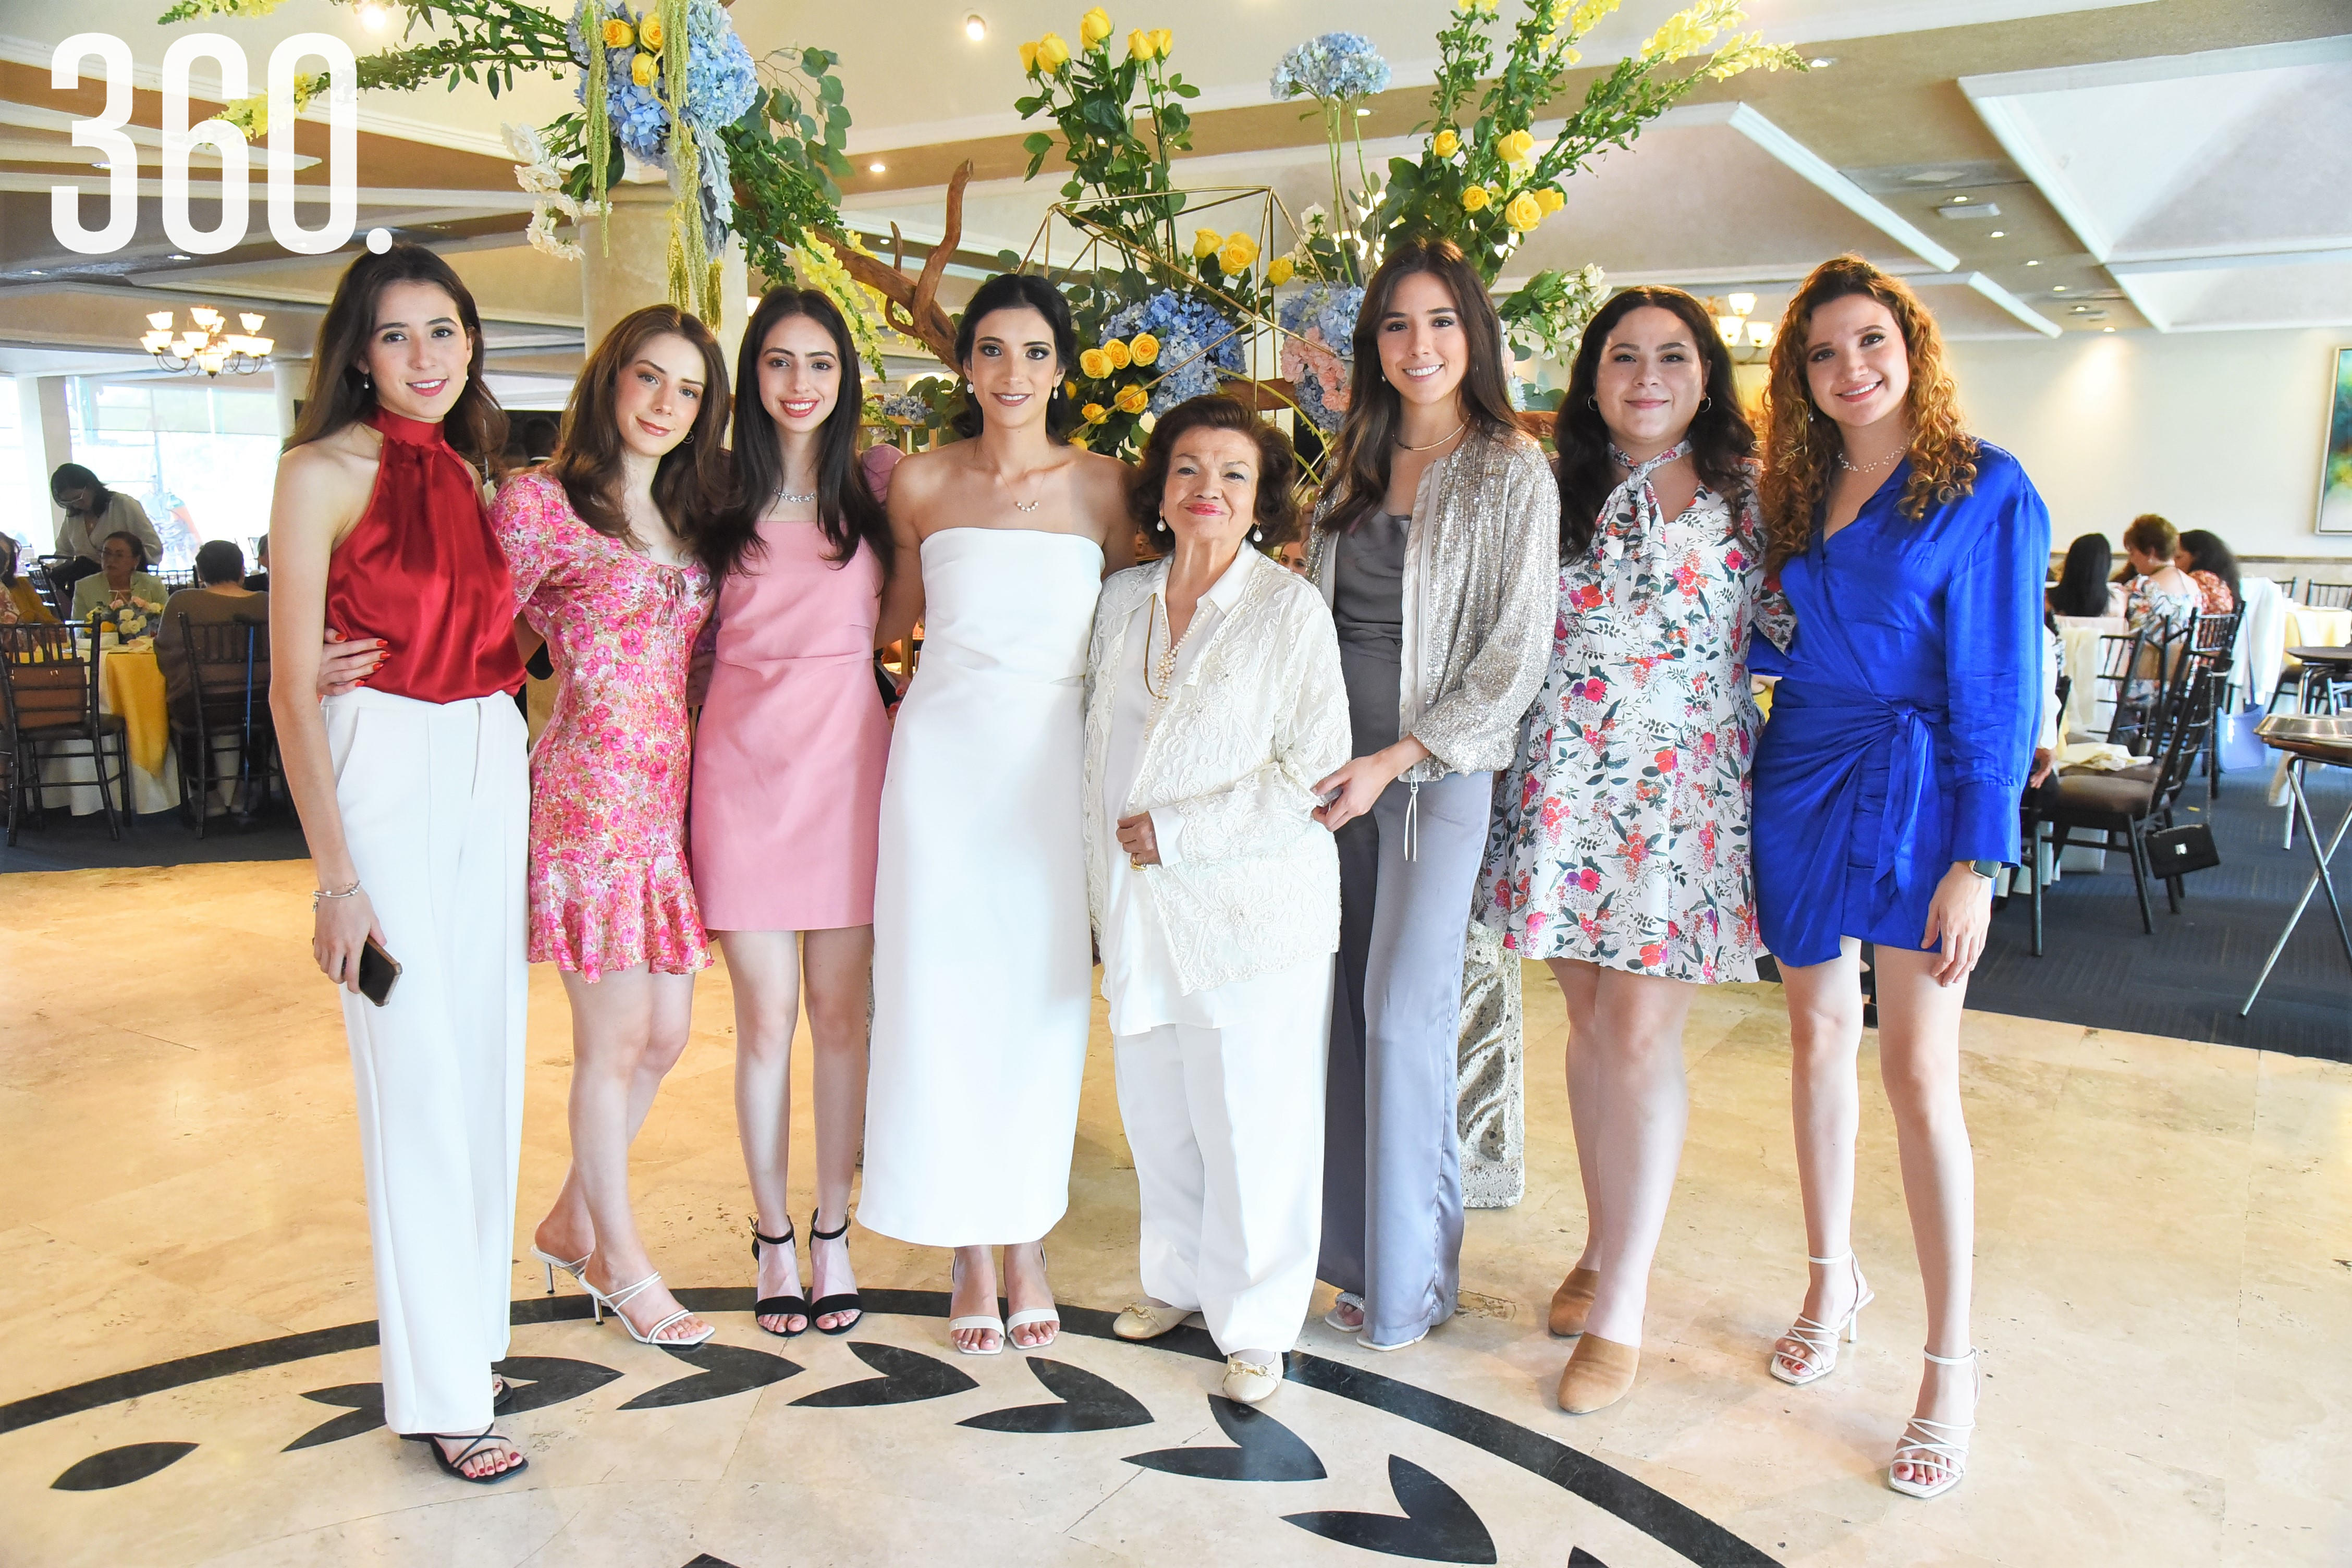 Cristel Sosa, Sofía, Regina, Mariel Medrano, Yolanda Flores de Medrano, Alexa Sosa, Karla Cárdenas y Stephania Sosa.